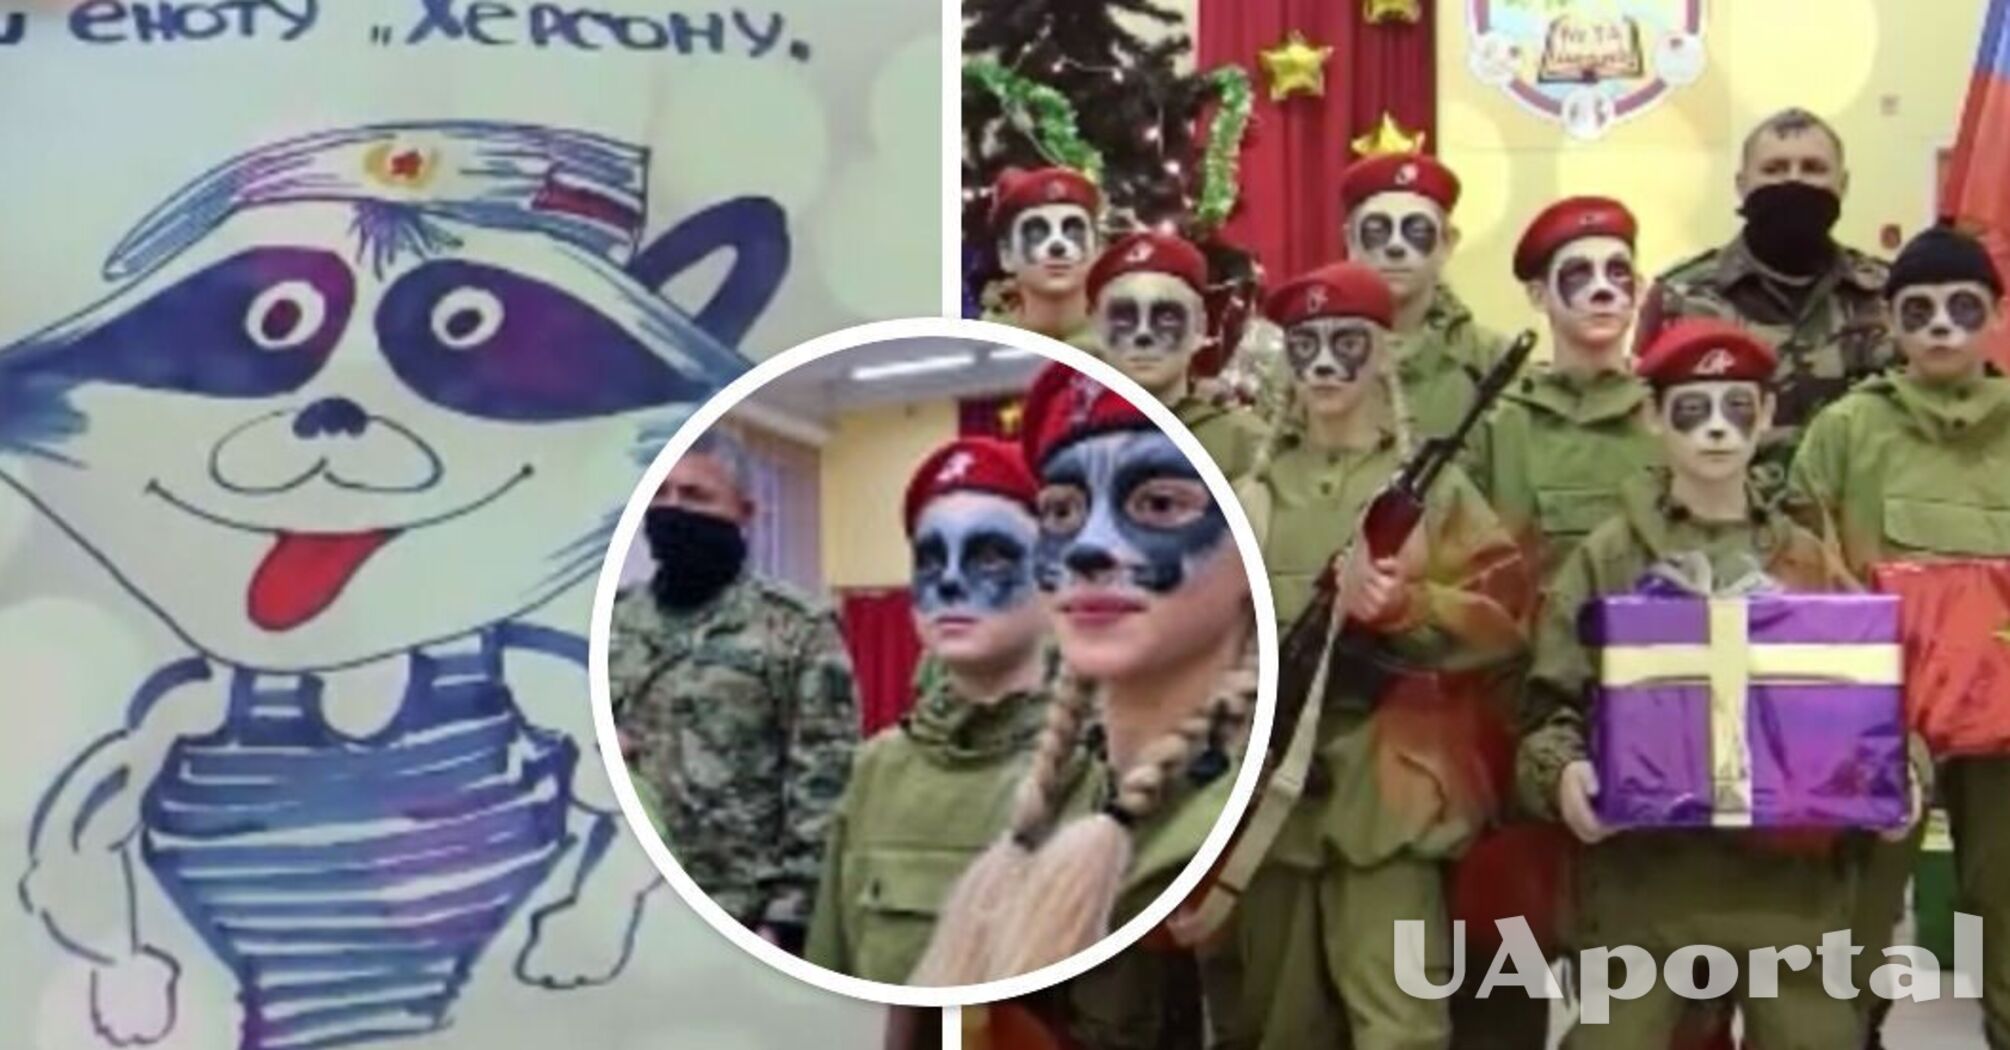 У російському Кемерово дітей загримували під викраденого херсонського єнота і дали зброю (фото, відео)